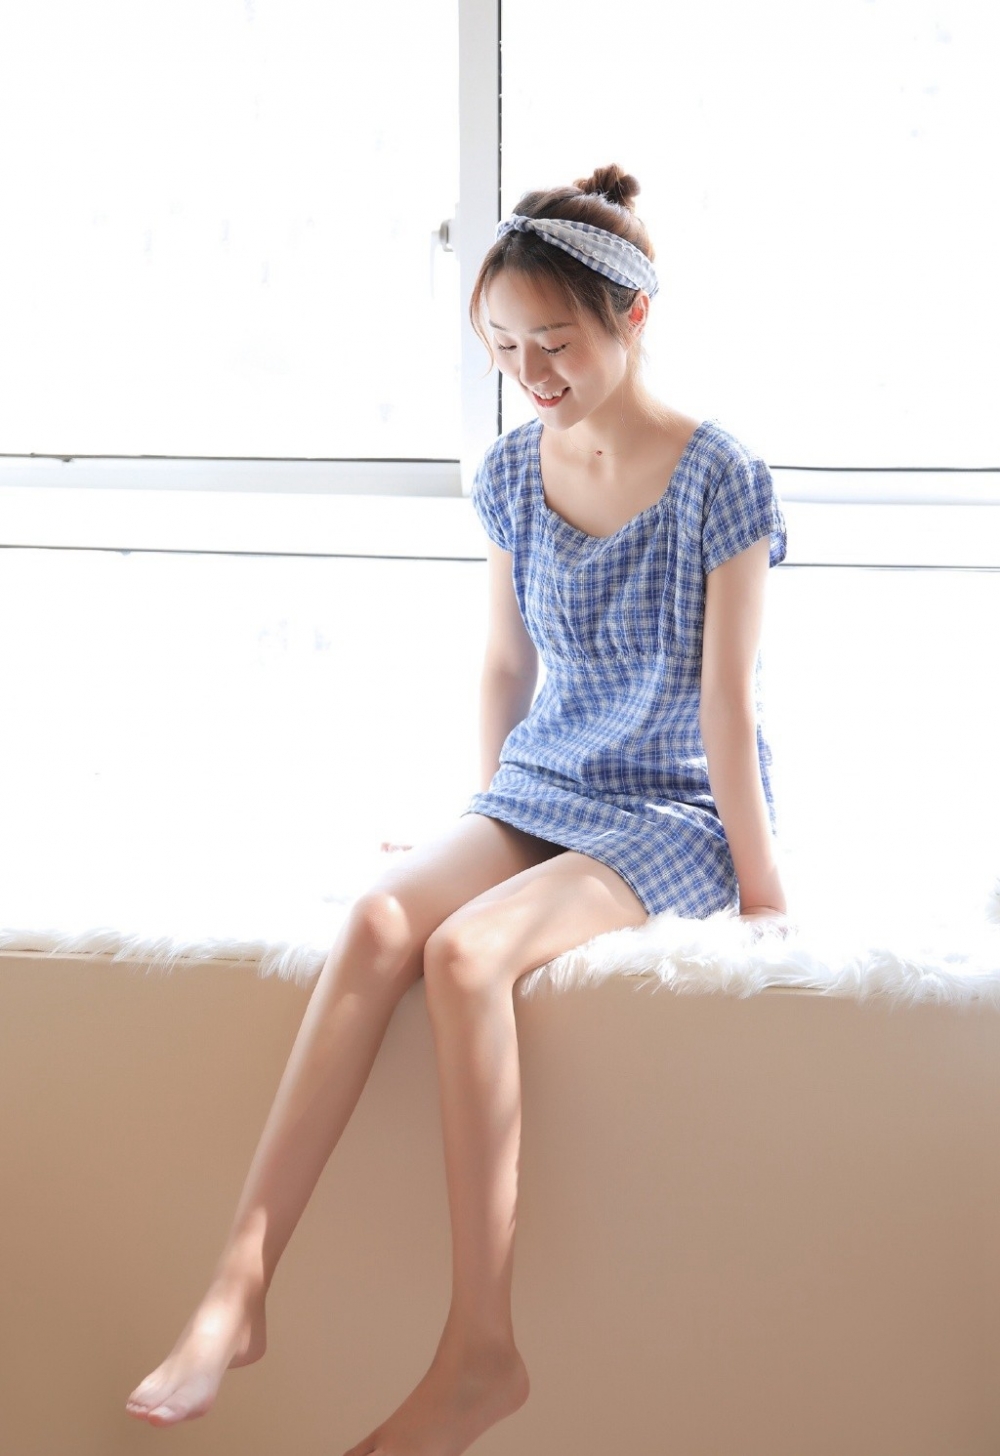 可爱美眉日式丸子头夏季连衣裙修长美腿女性私身体